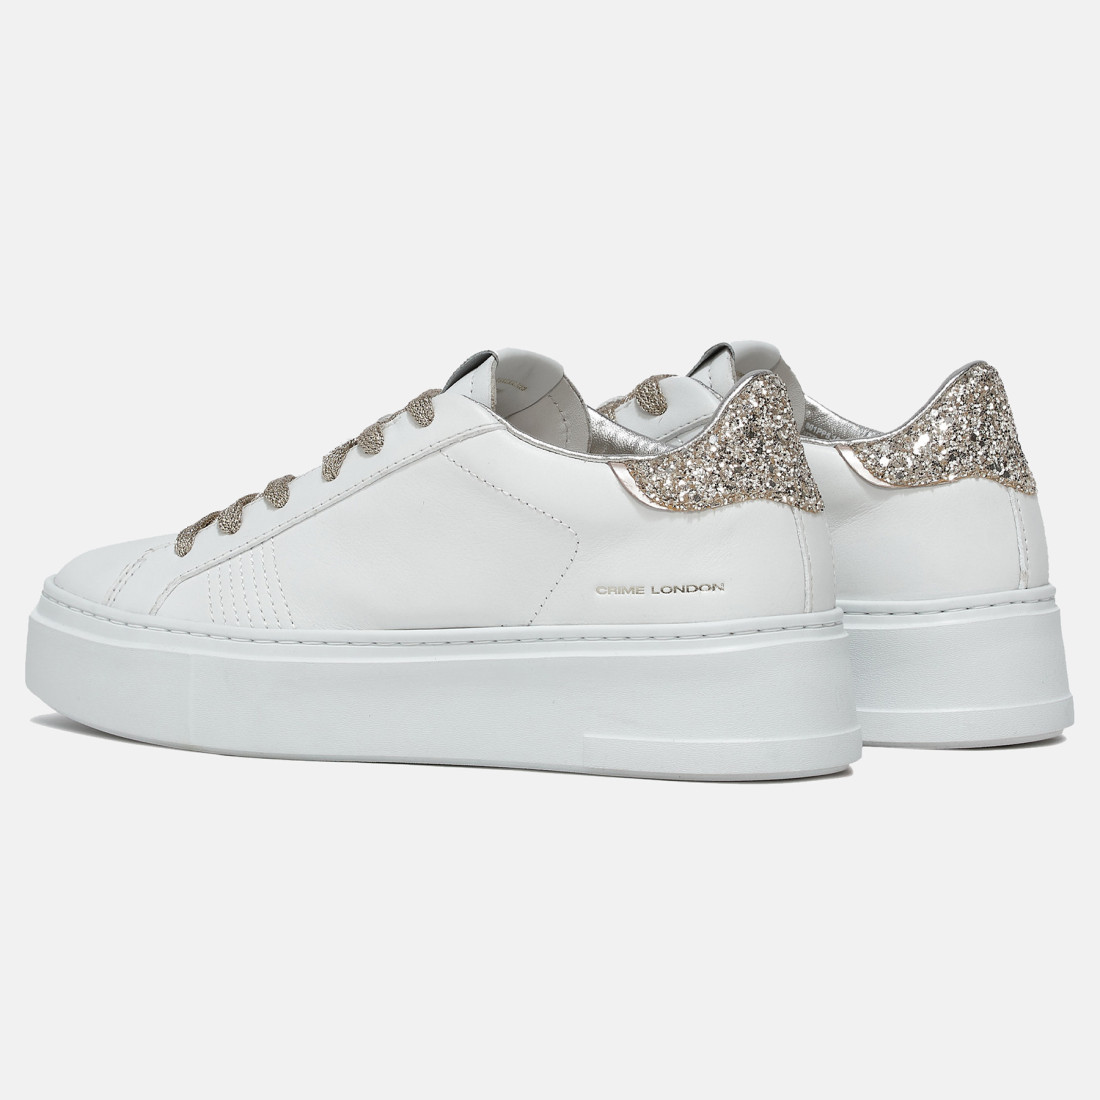 Crime London Extralight white sneaker with platinum glitter